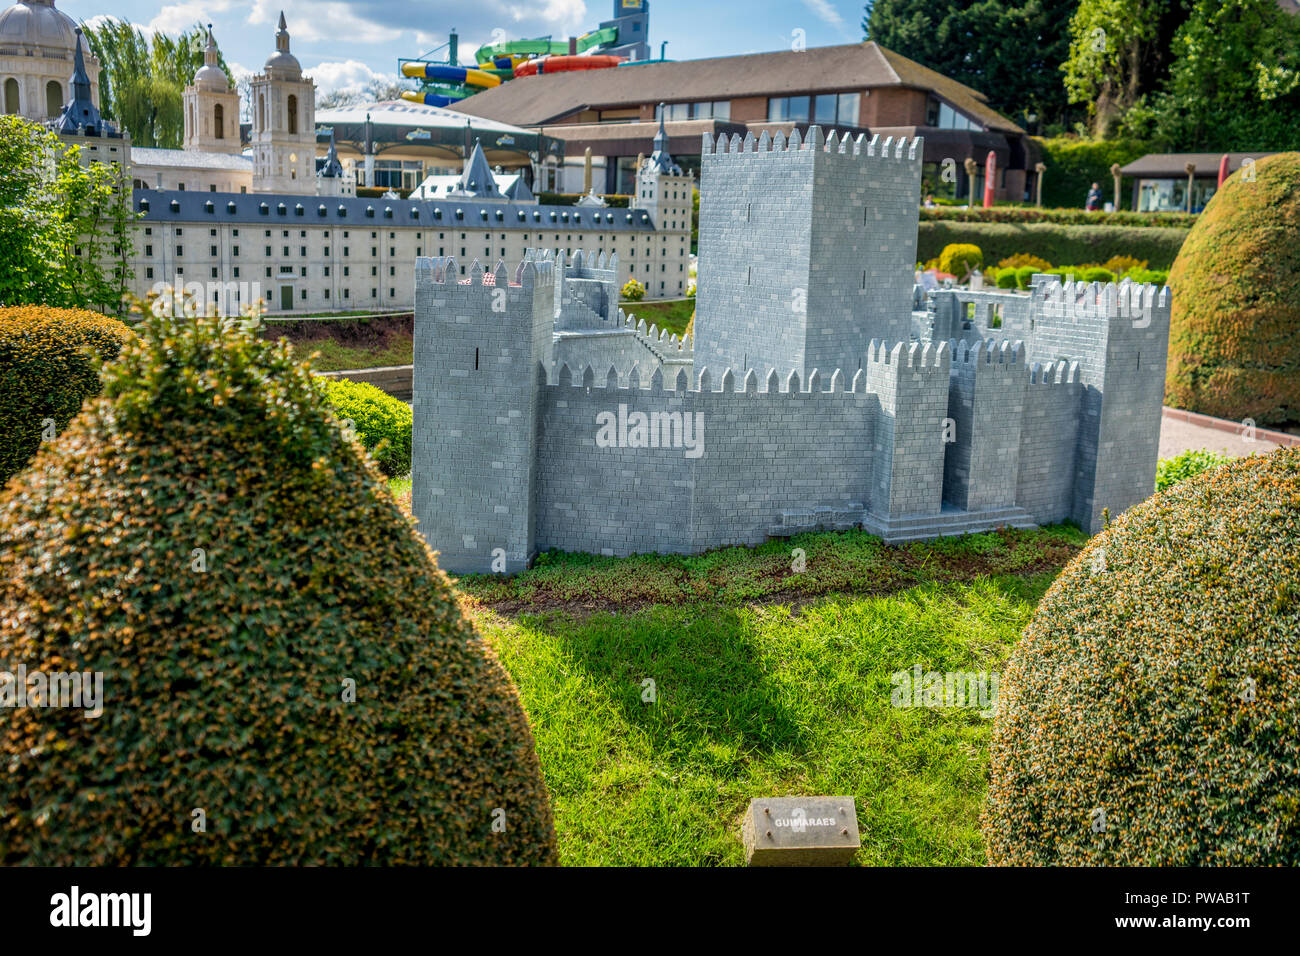 Bruxelles, Belgique - 17 Avril 2017 : Miniatures au parc Mini-Europe - reproduction du château de Guimaraes, Portugal, Europe Banque D'Images